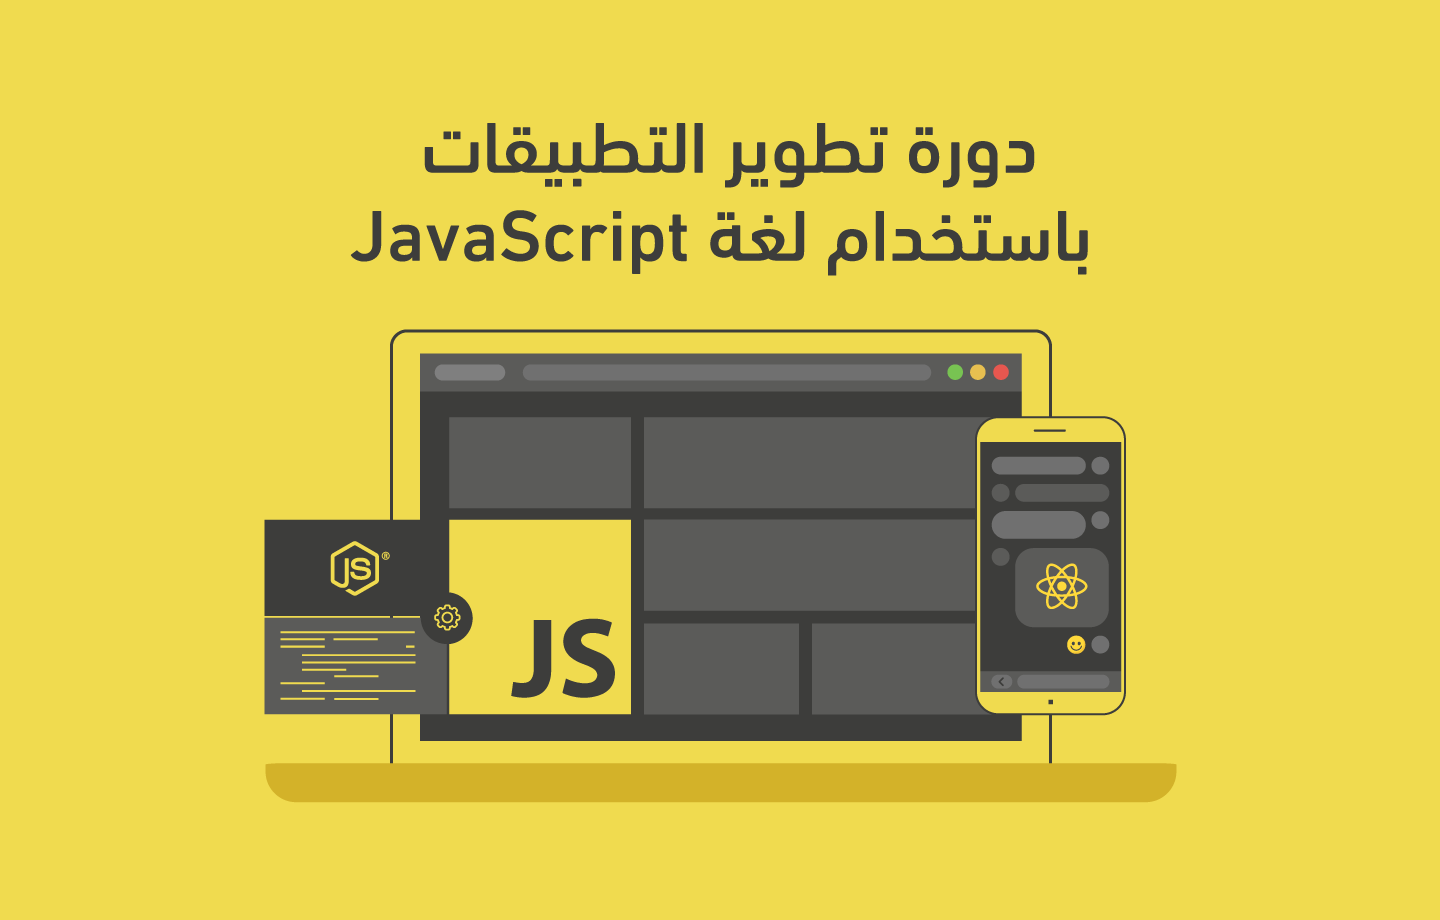 دورة تطوير تطبيقات الويب باستخدام لغة جافاسكربت